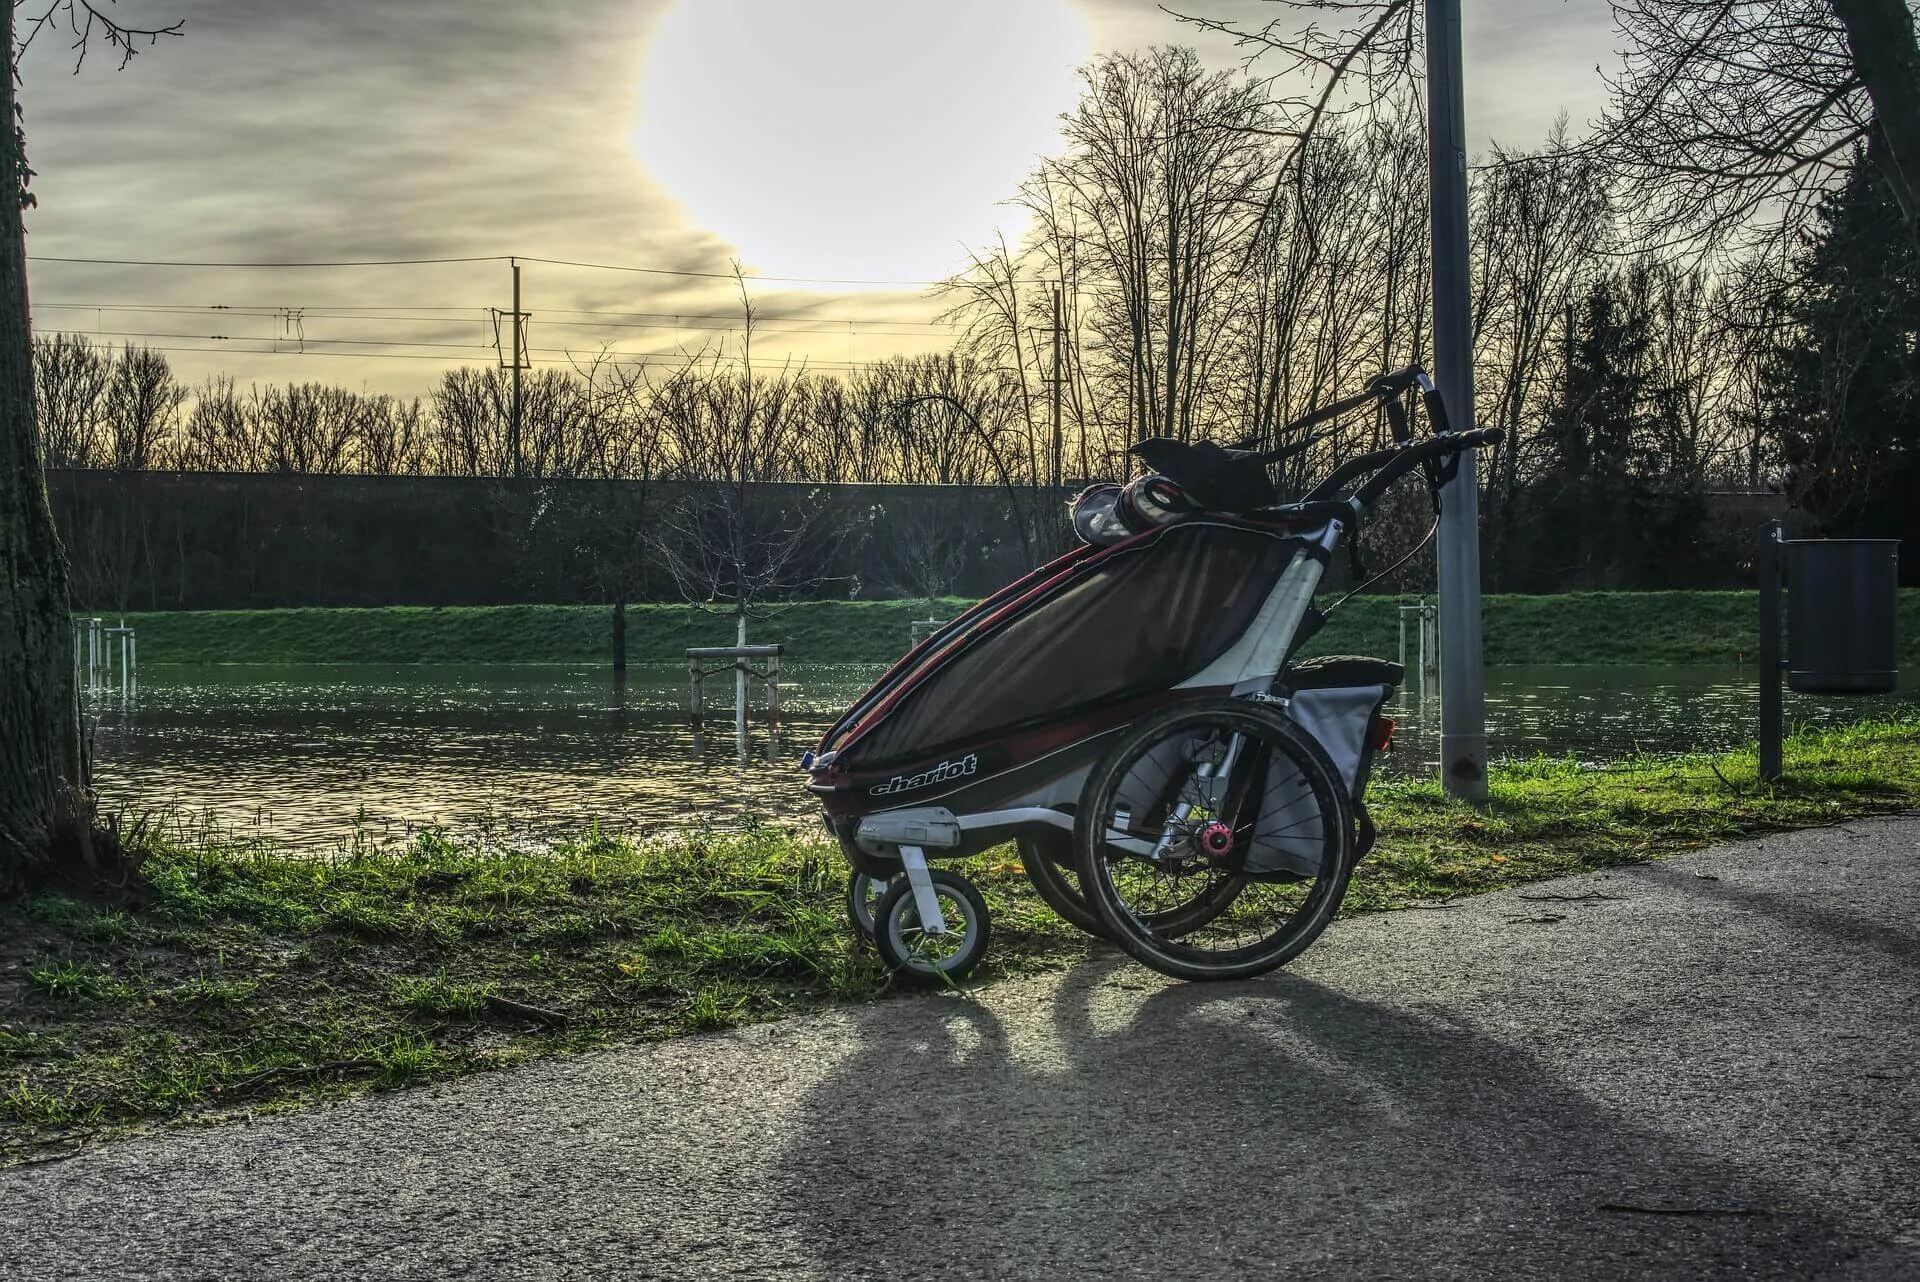 Jogger/stroller type bike trailer for kids